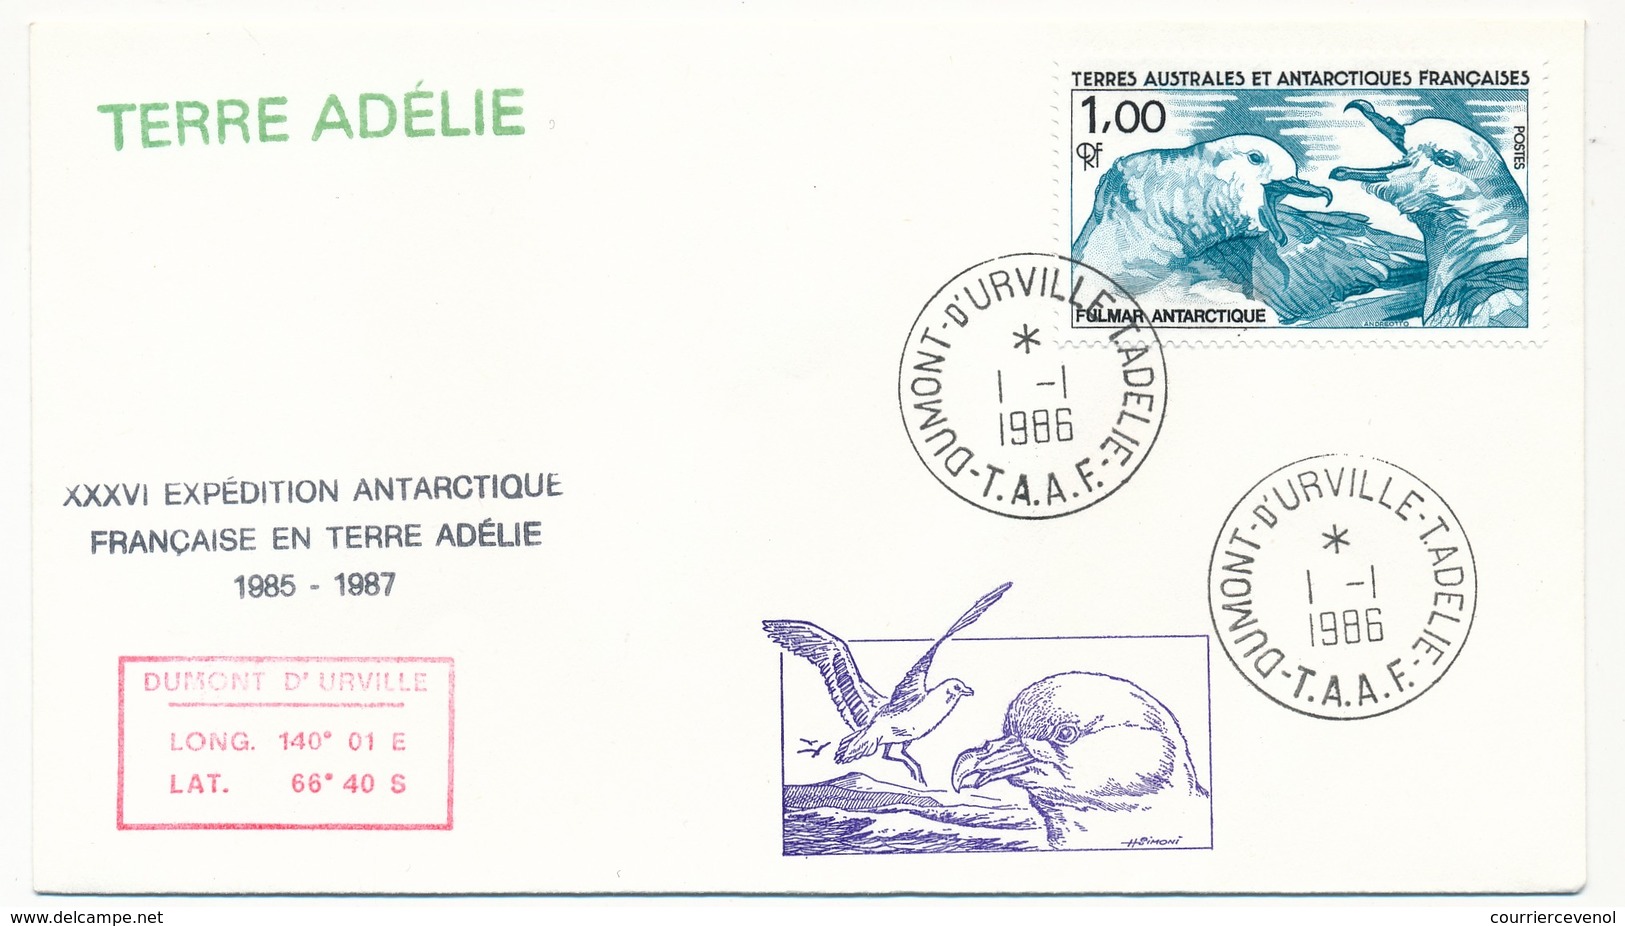 TAAF - Enveloppe - Dumont D'Urville T. Adélie - 1-1-1986 - XXXVI Expédition Antarctique Française... - Lettres & Documents